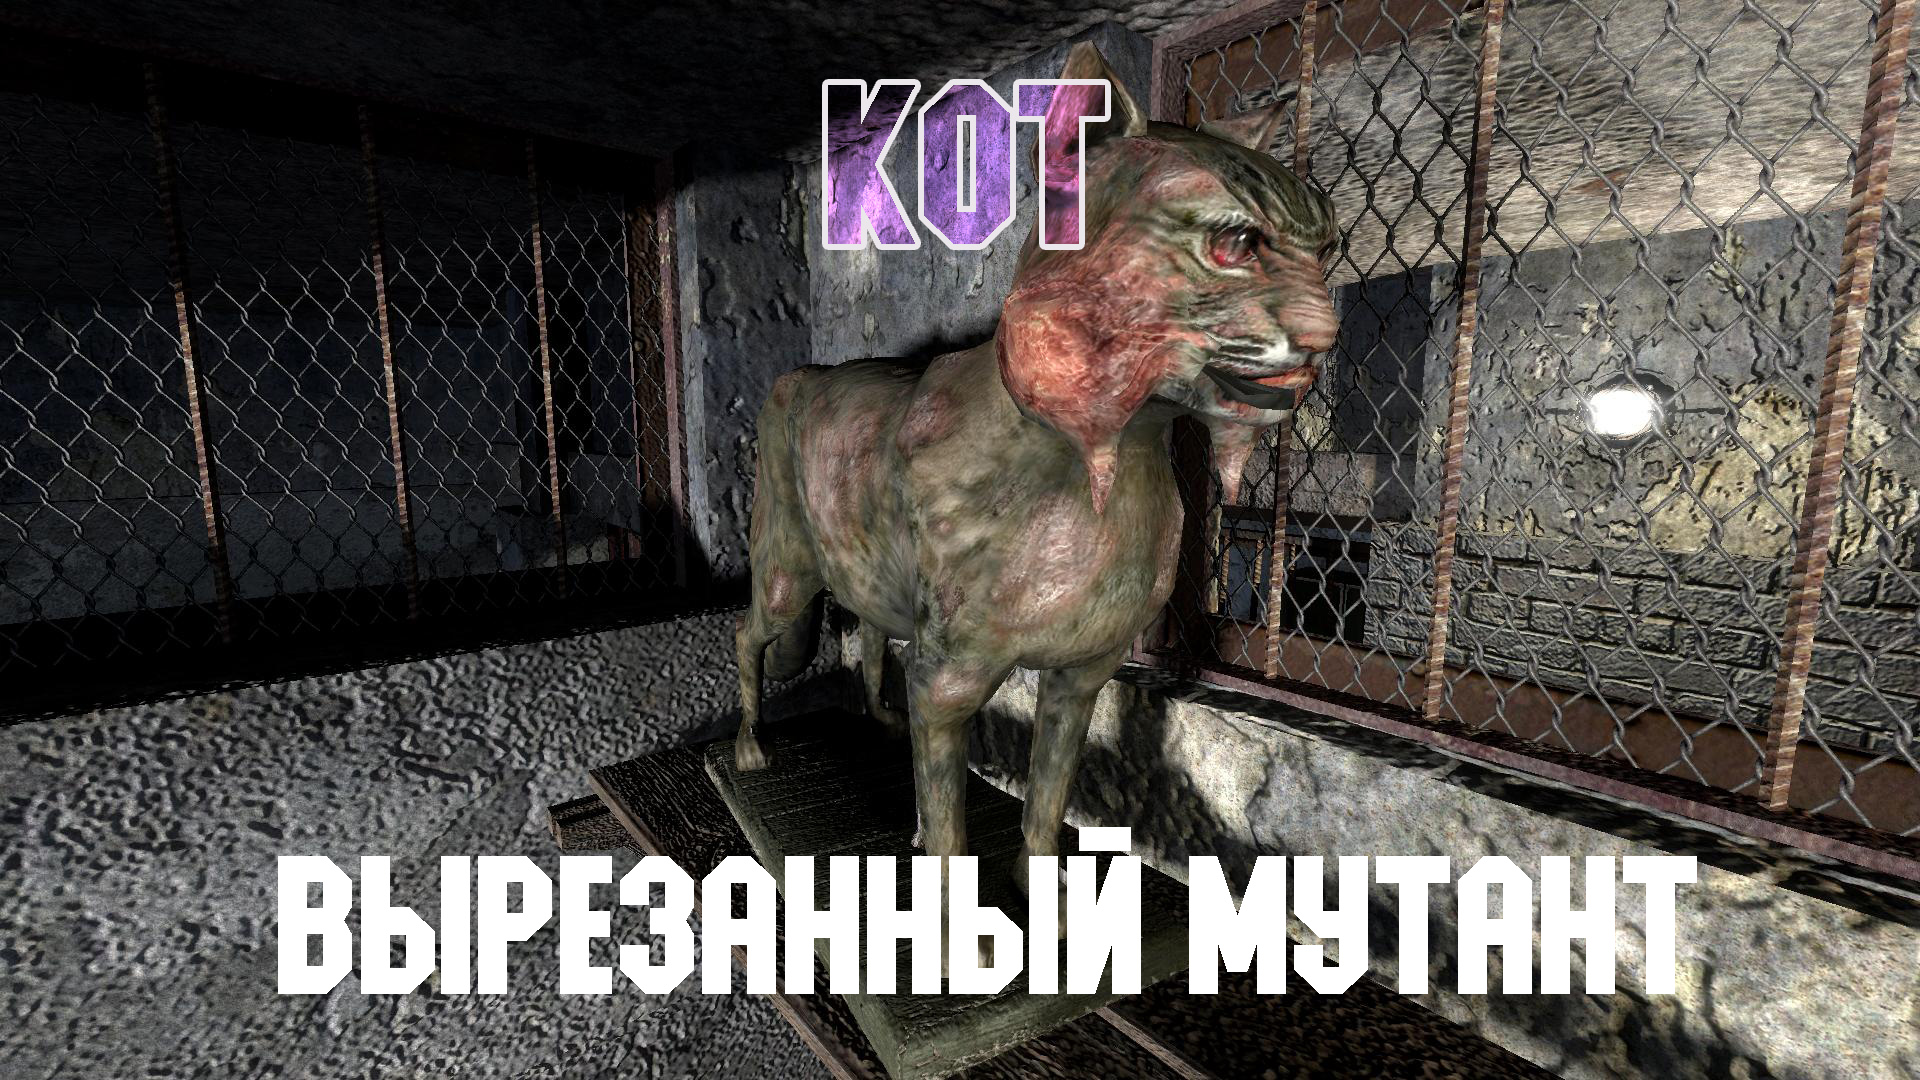 STALKER Тень Чернобыля. Смотр вырезанного мутанта "Кот"